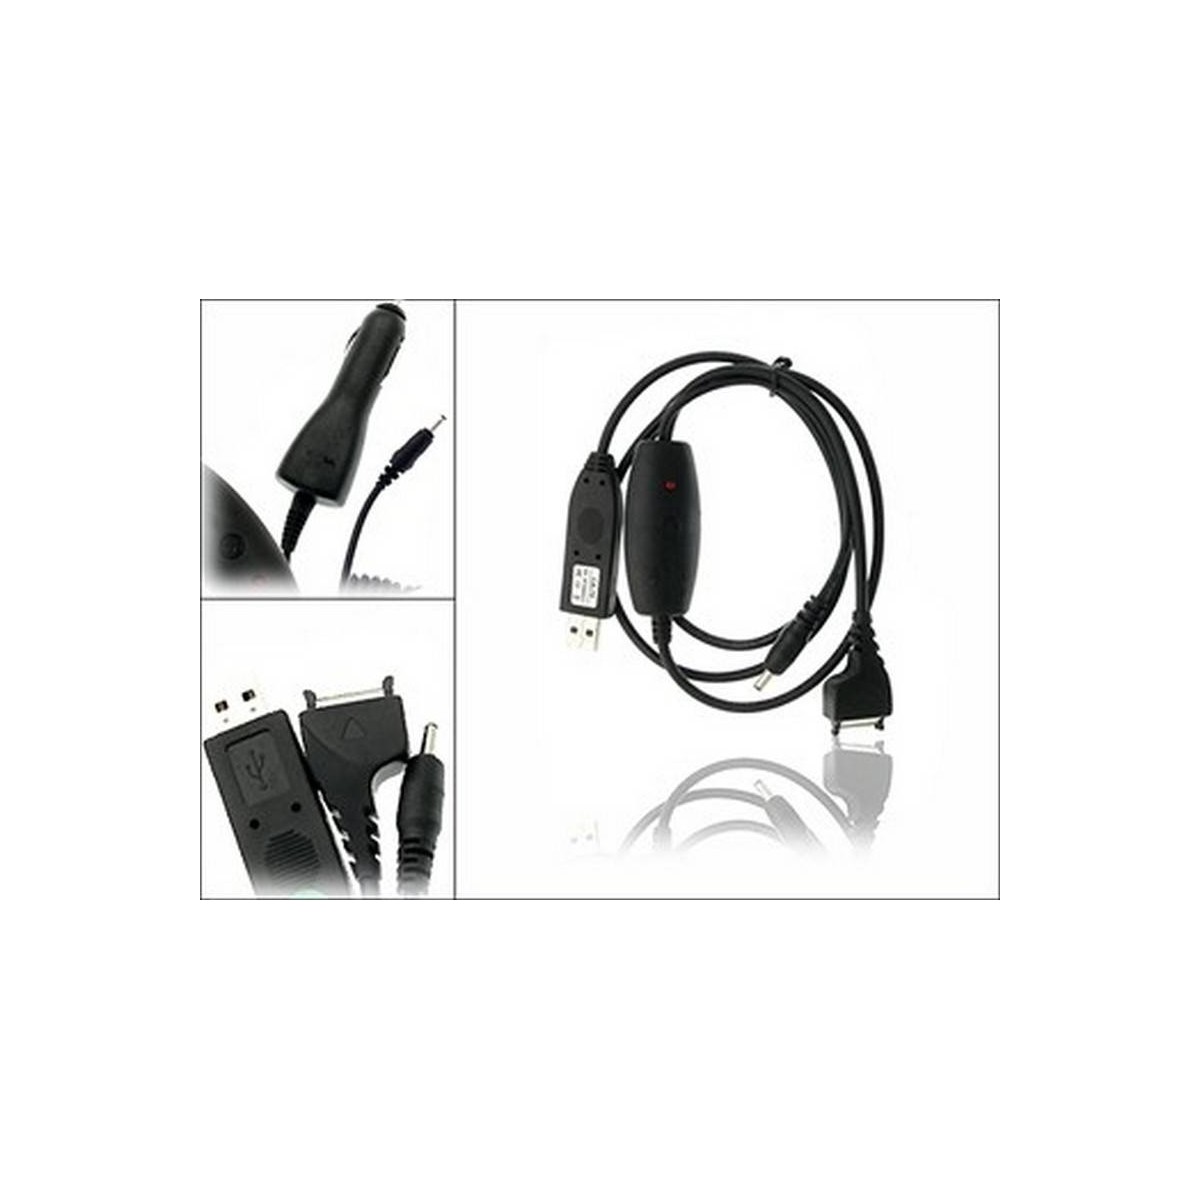 Nokia CA-70 cable datos USB y cargador USB para N92 N90 N80 N71 N70 E70 E61 E60 9500 9300i 9300